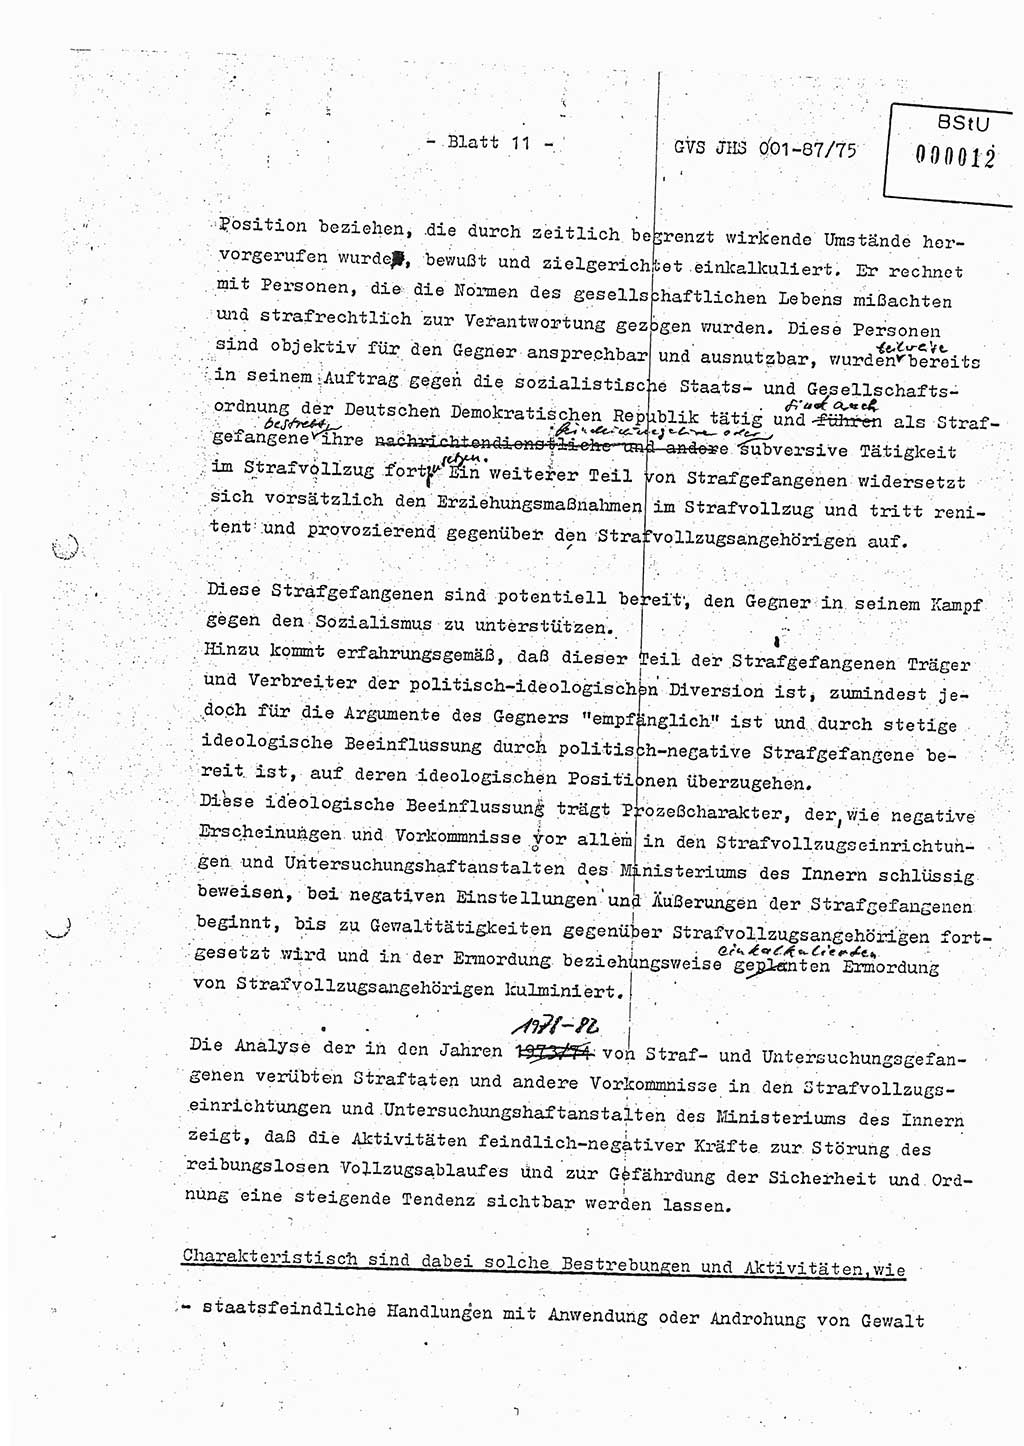 Diplomarbeit Hauptmann Volkmar Heinz (Abt. ⅩⅣ), Oberleutnant Lothar Rüdiger (BV Lpz. Abt. Ⅺ), Ministerium für Staatssicherheit (MfS) [Deutsche Demokratische Republik (DDR)], Juristische Hochschule (JHS), Geheime Verschlußsache (GVS) o001-87/75, Potsdam 1975, Seite 11 (Dipl.-Arb. MfS DDR JHS GVS o001-87/75 1975, S. 11)